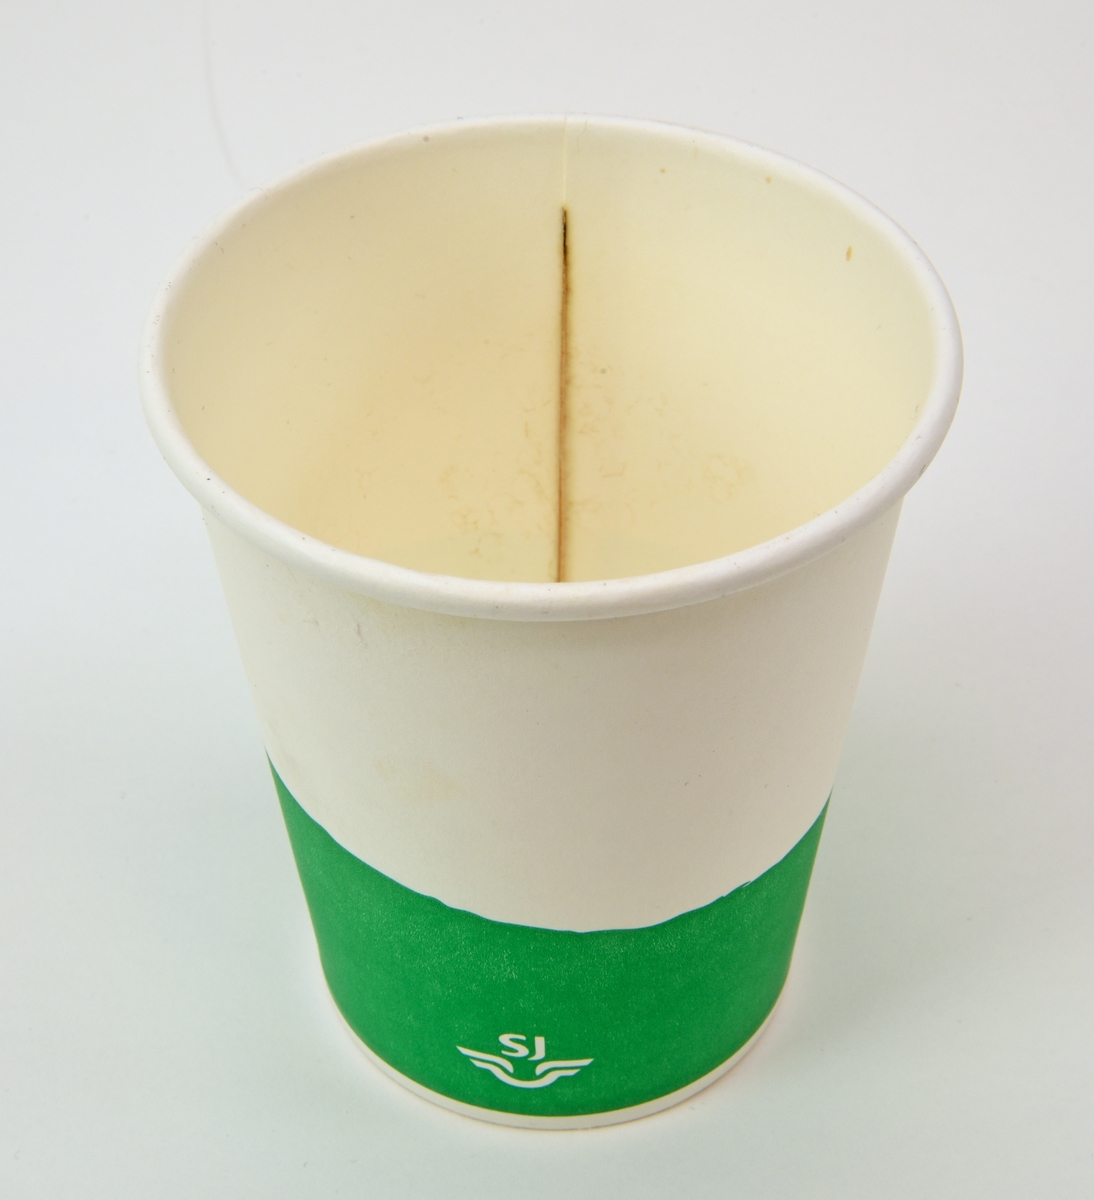 En pappmugg med lock av plast från SJ Bistro. Muggen har ett grönt fält nedtill med vit SJ-logga. Locket är vitt med ett avlångt hål. Muggen har spår efter te inuti.